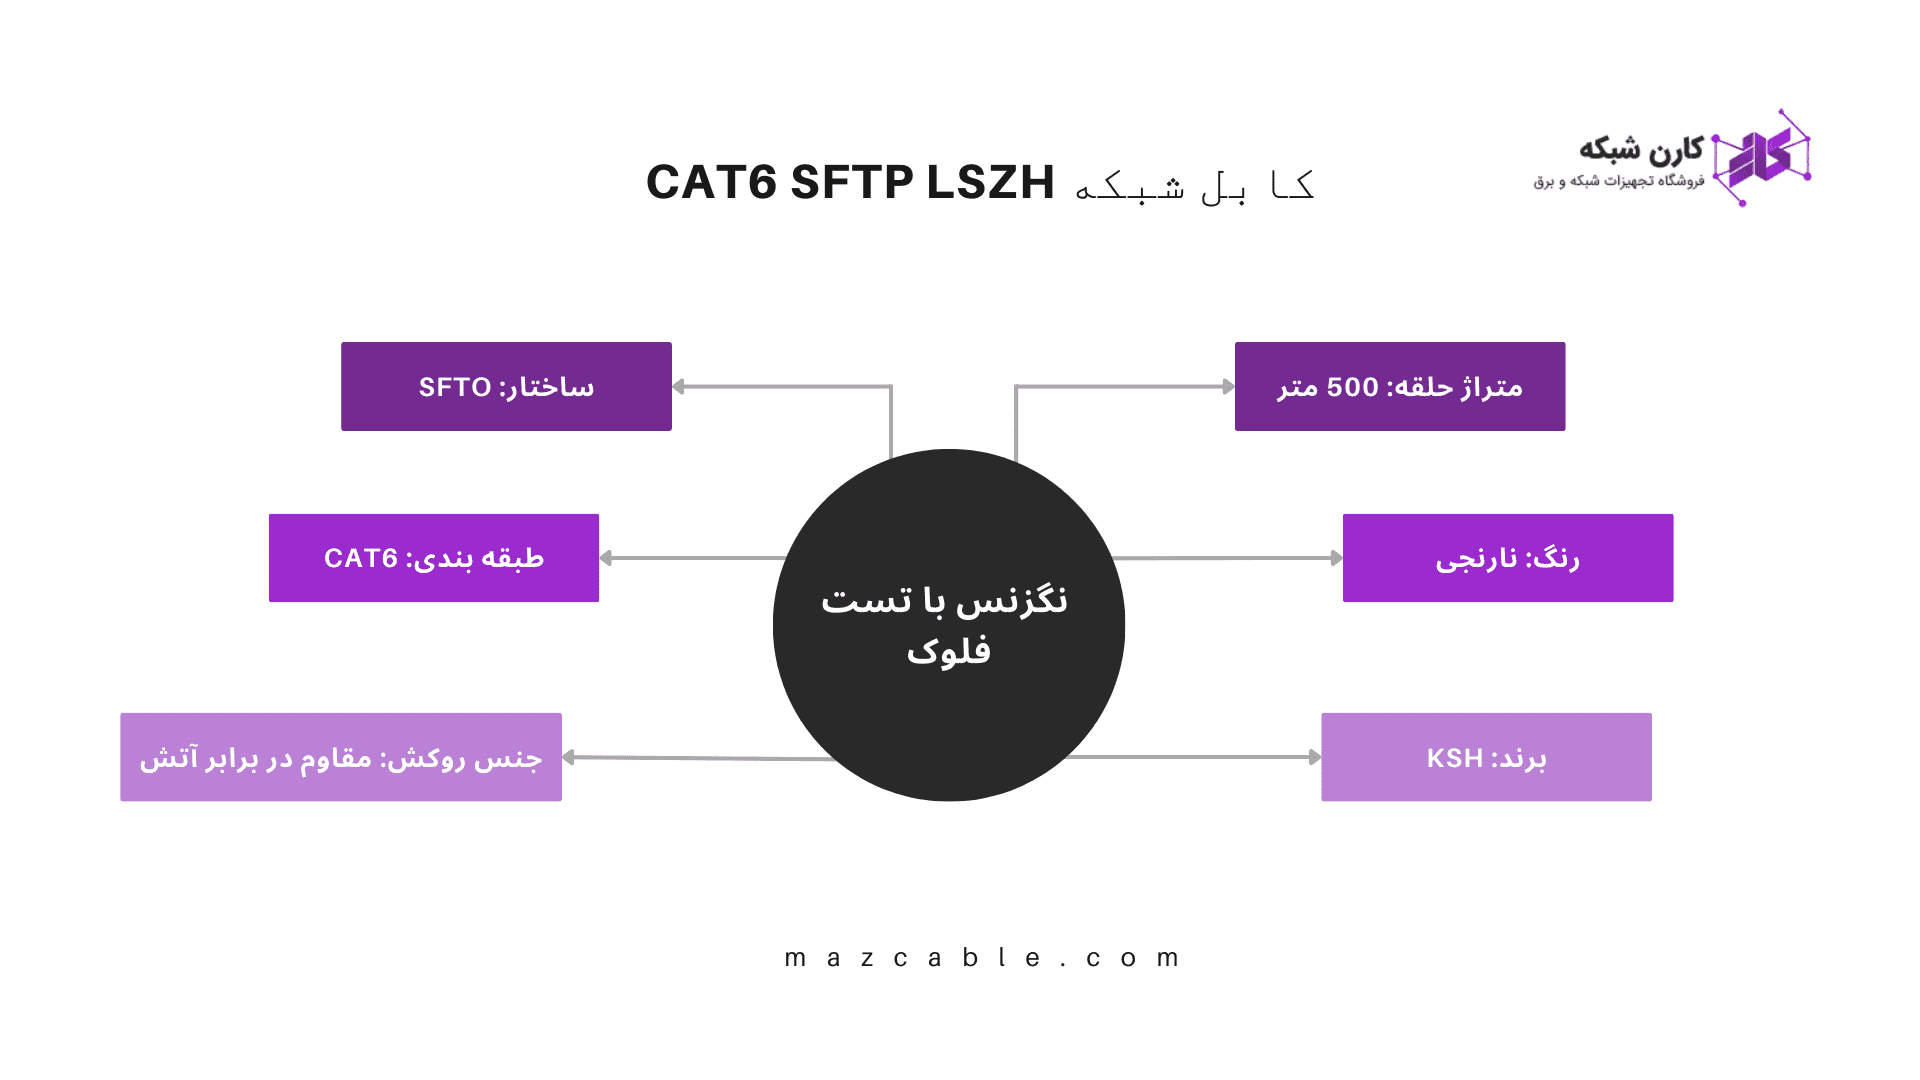 شبکه CAT6 SFTP LSZH